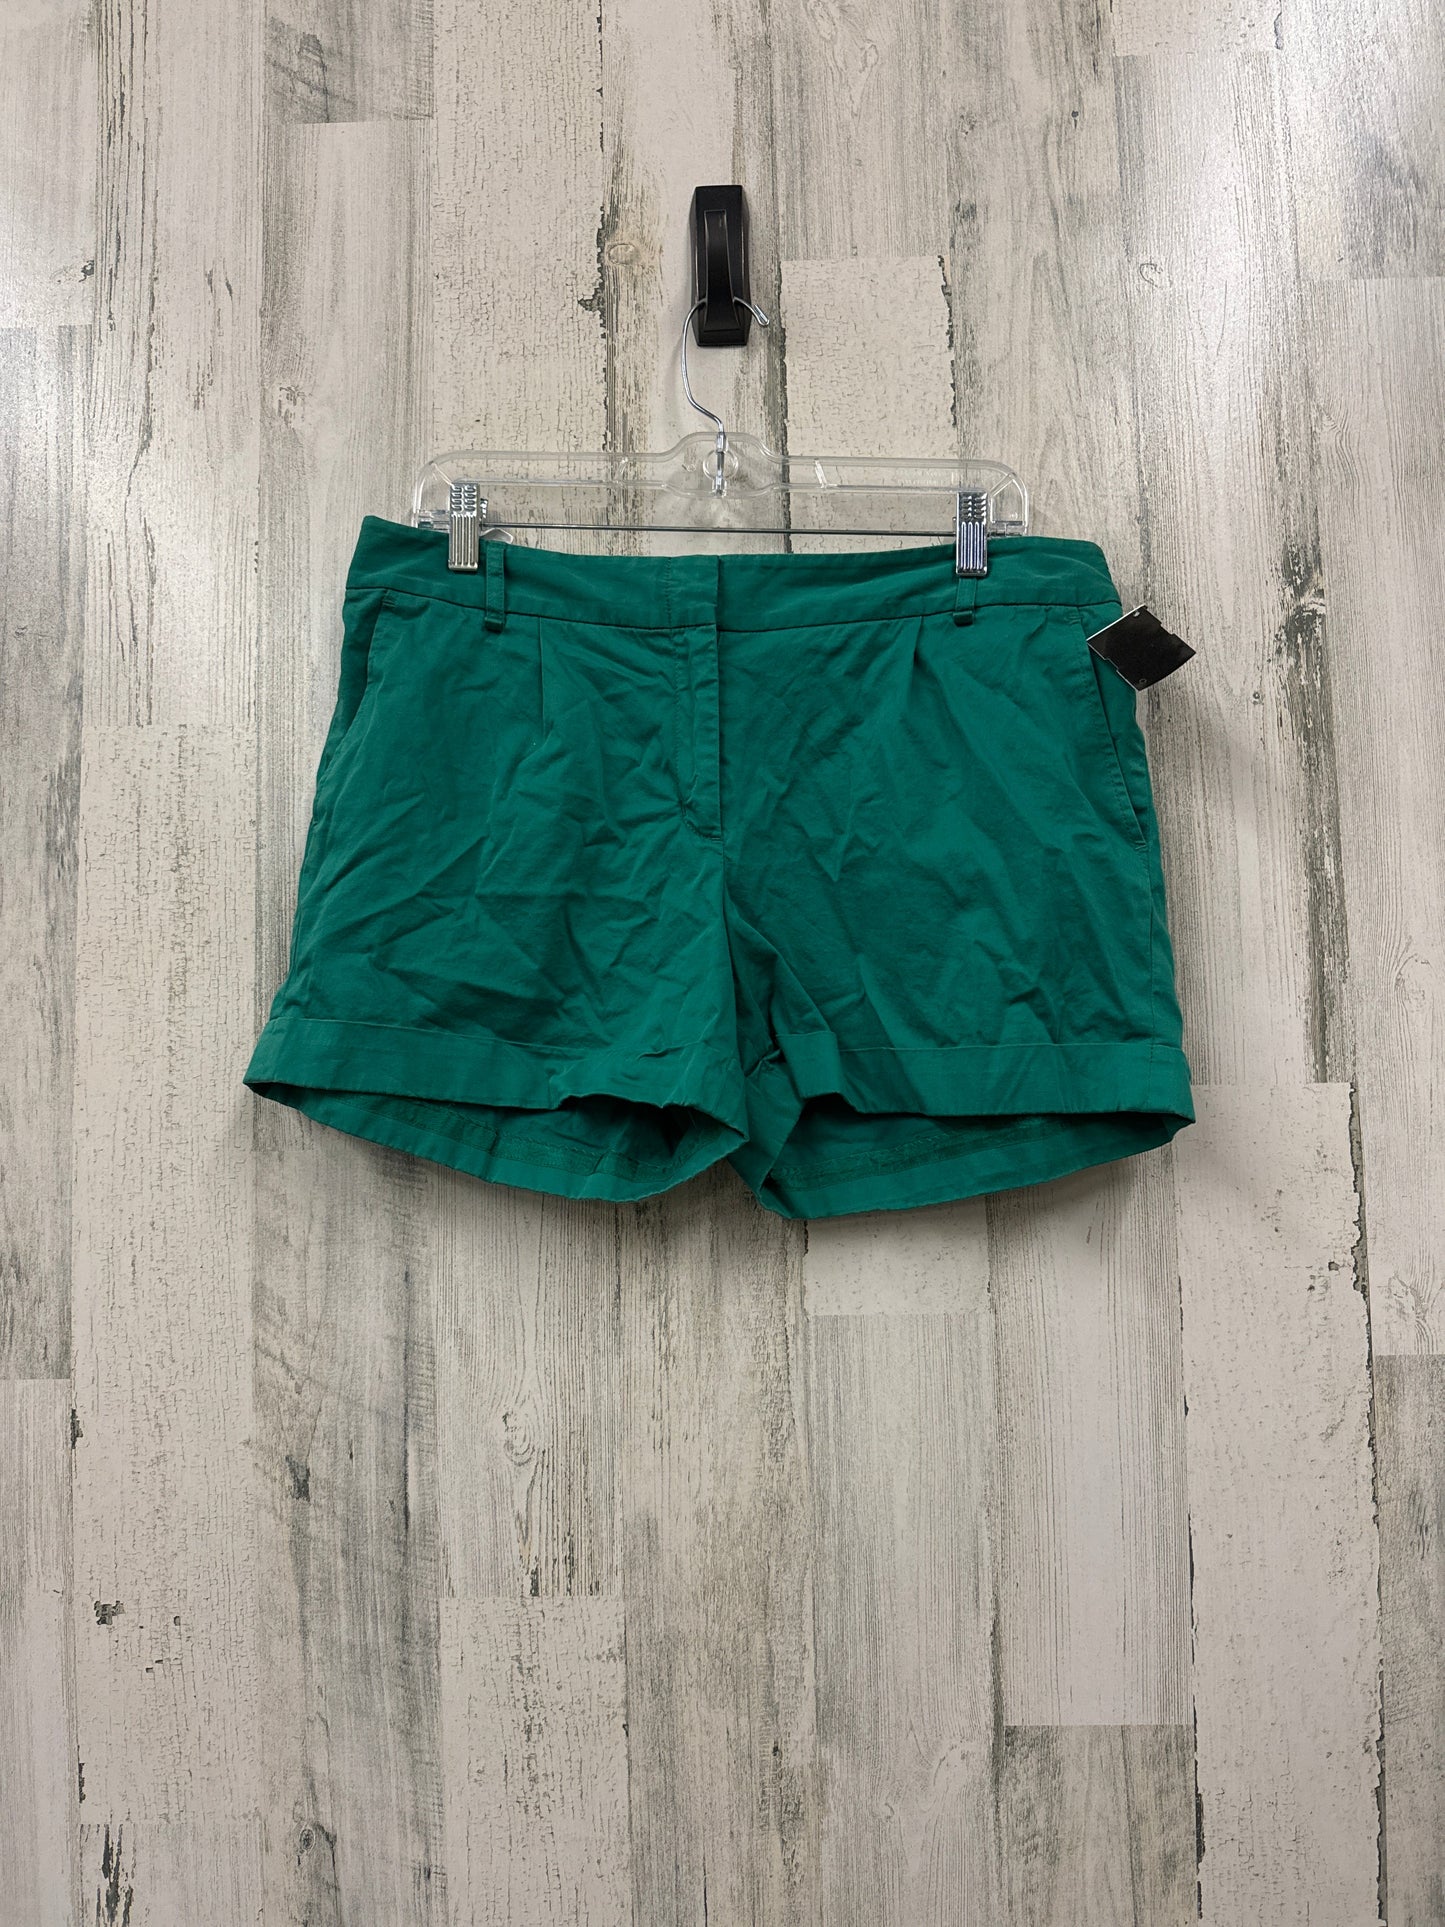 Green Shorts Bcbgmaxazria, Size 12